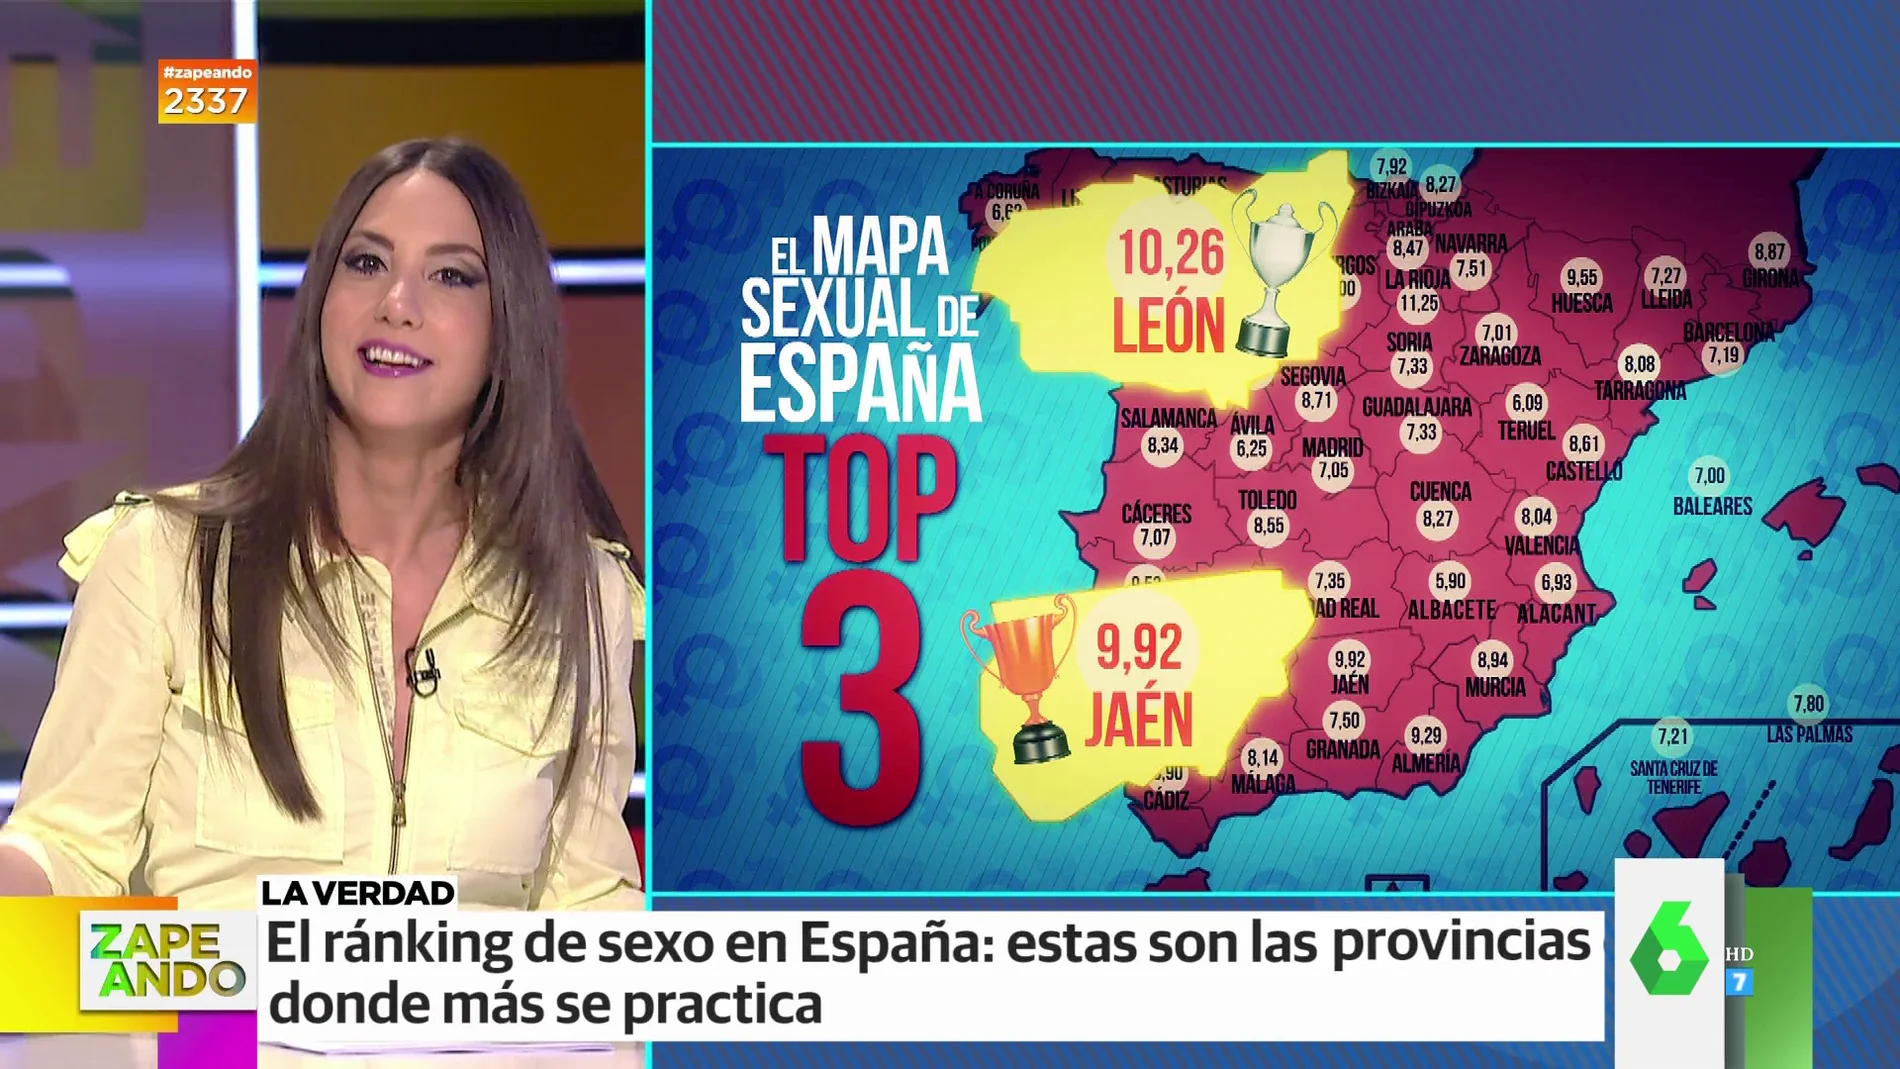 ¿Cuál es la provincia de España donde se practica más sexo? ¿Y dónde menos? 